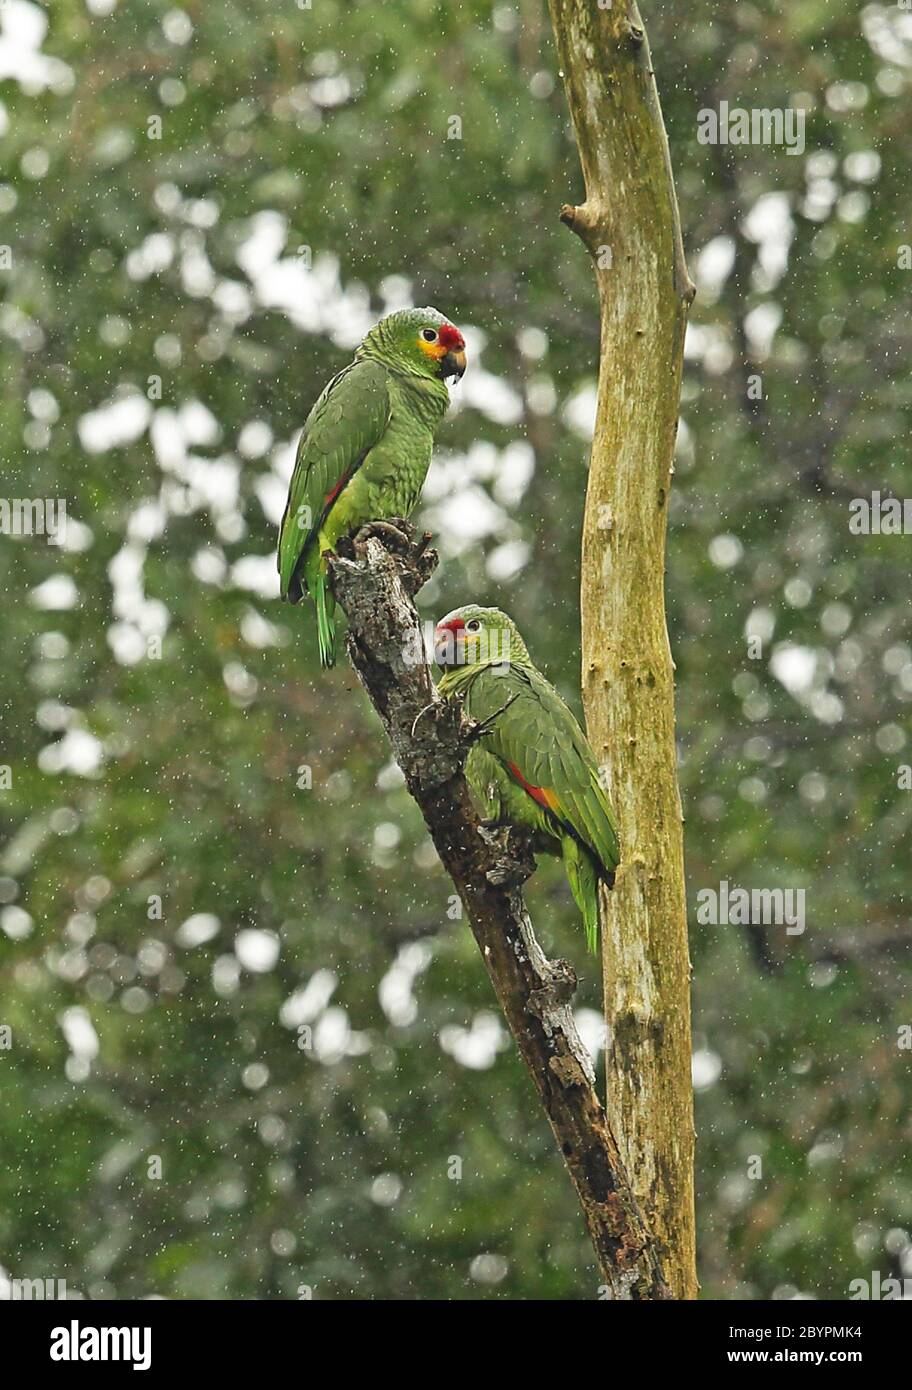 Amazone rouge-lied; amazone autumnalis autumnalis) paire perchée dans un arbre mort dans la pluie Cuero y Salado, Honduras février 2016 Banque D'Images